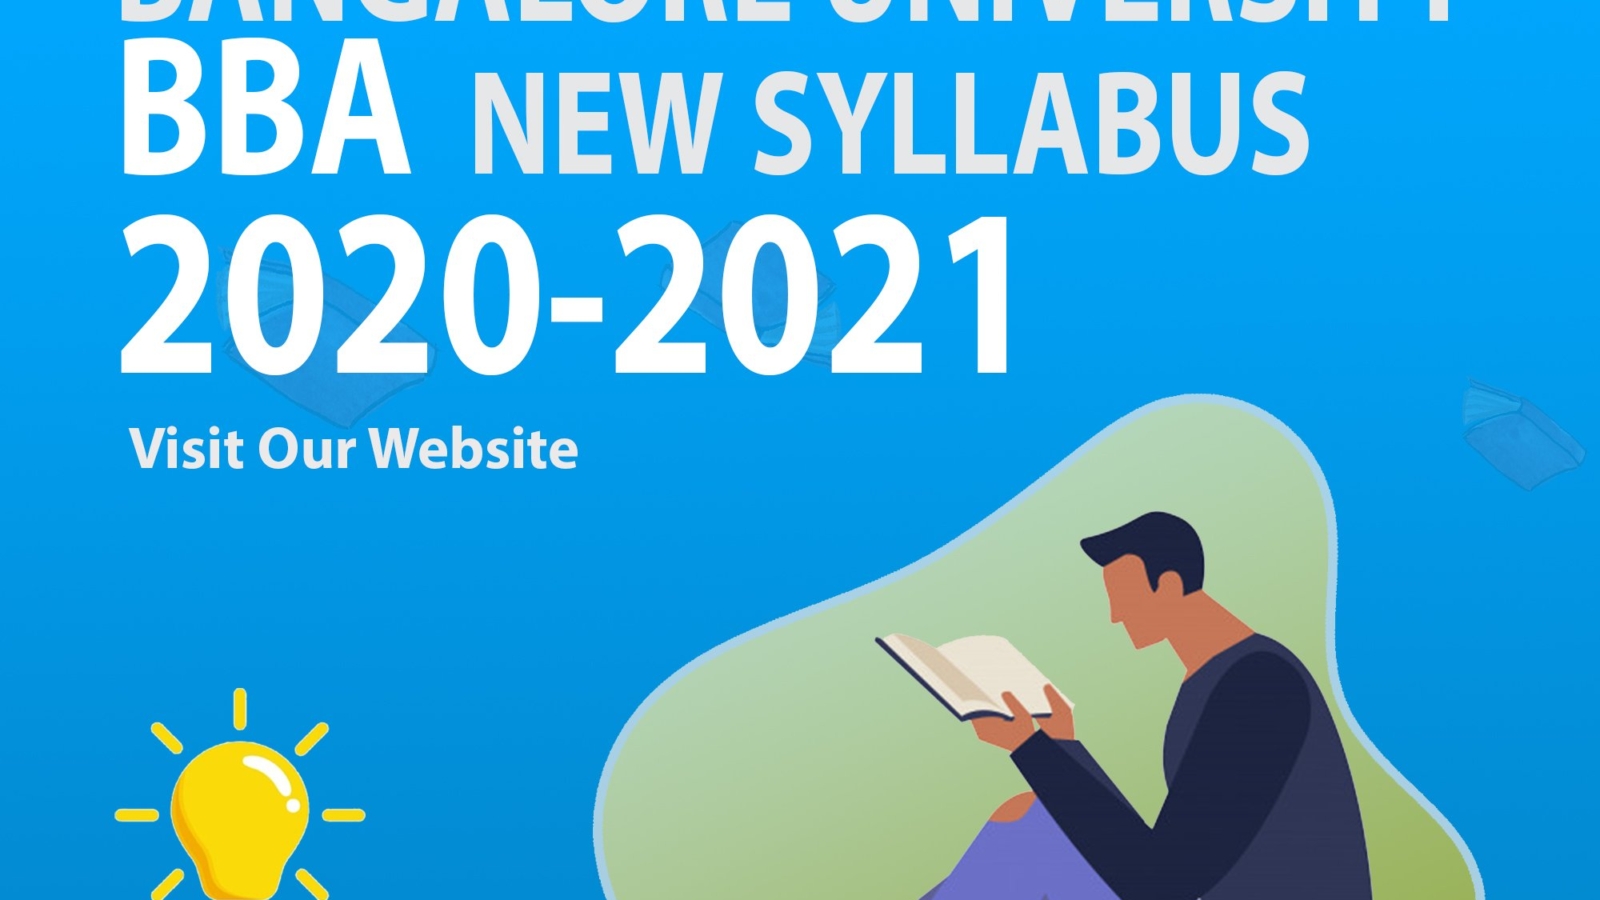 Bangalore University BBA new Syllabus 2020-2021